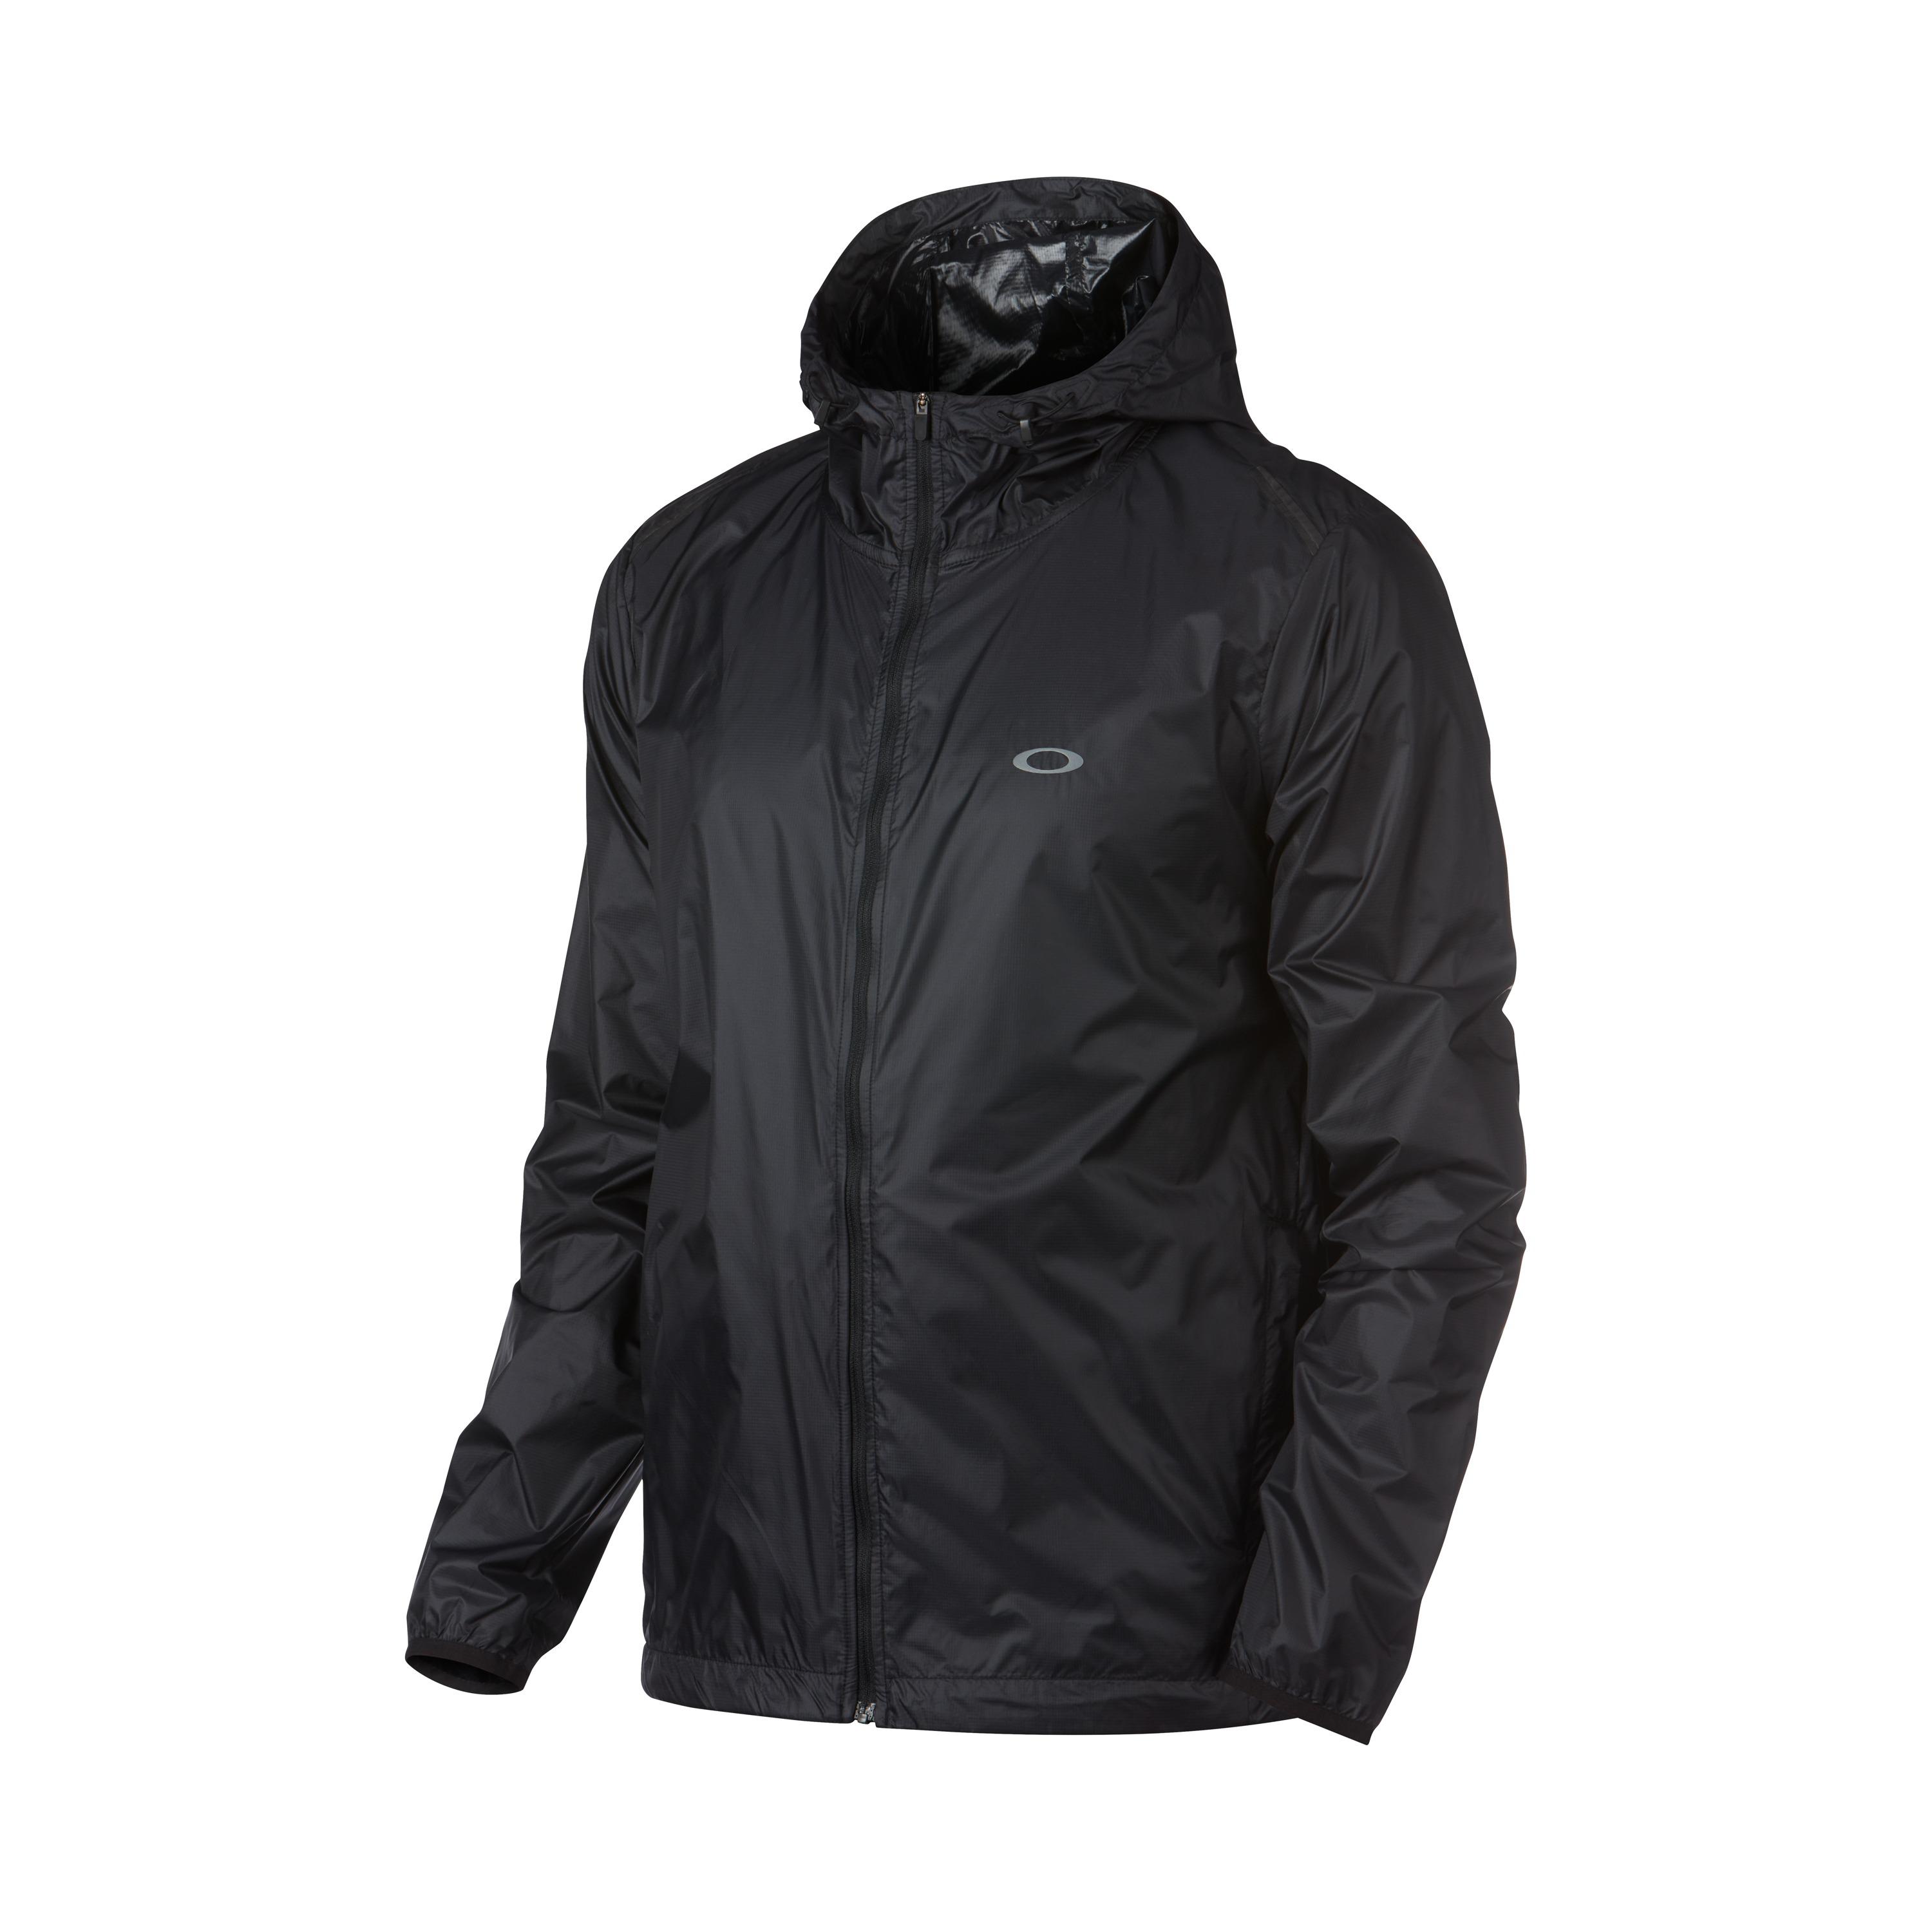 Oakley Synthetic Icon Windbreaker Jacket in Black for Men - Lyst